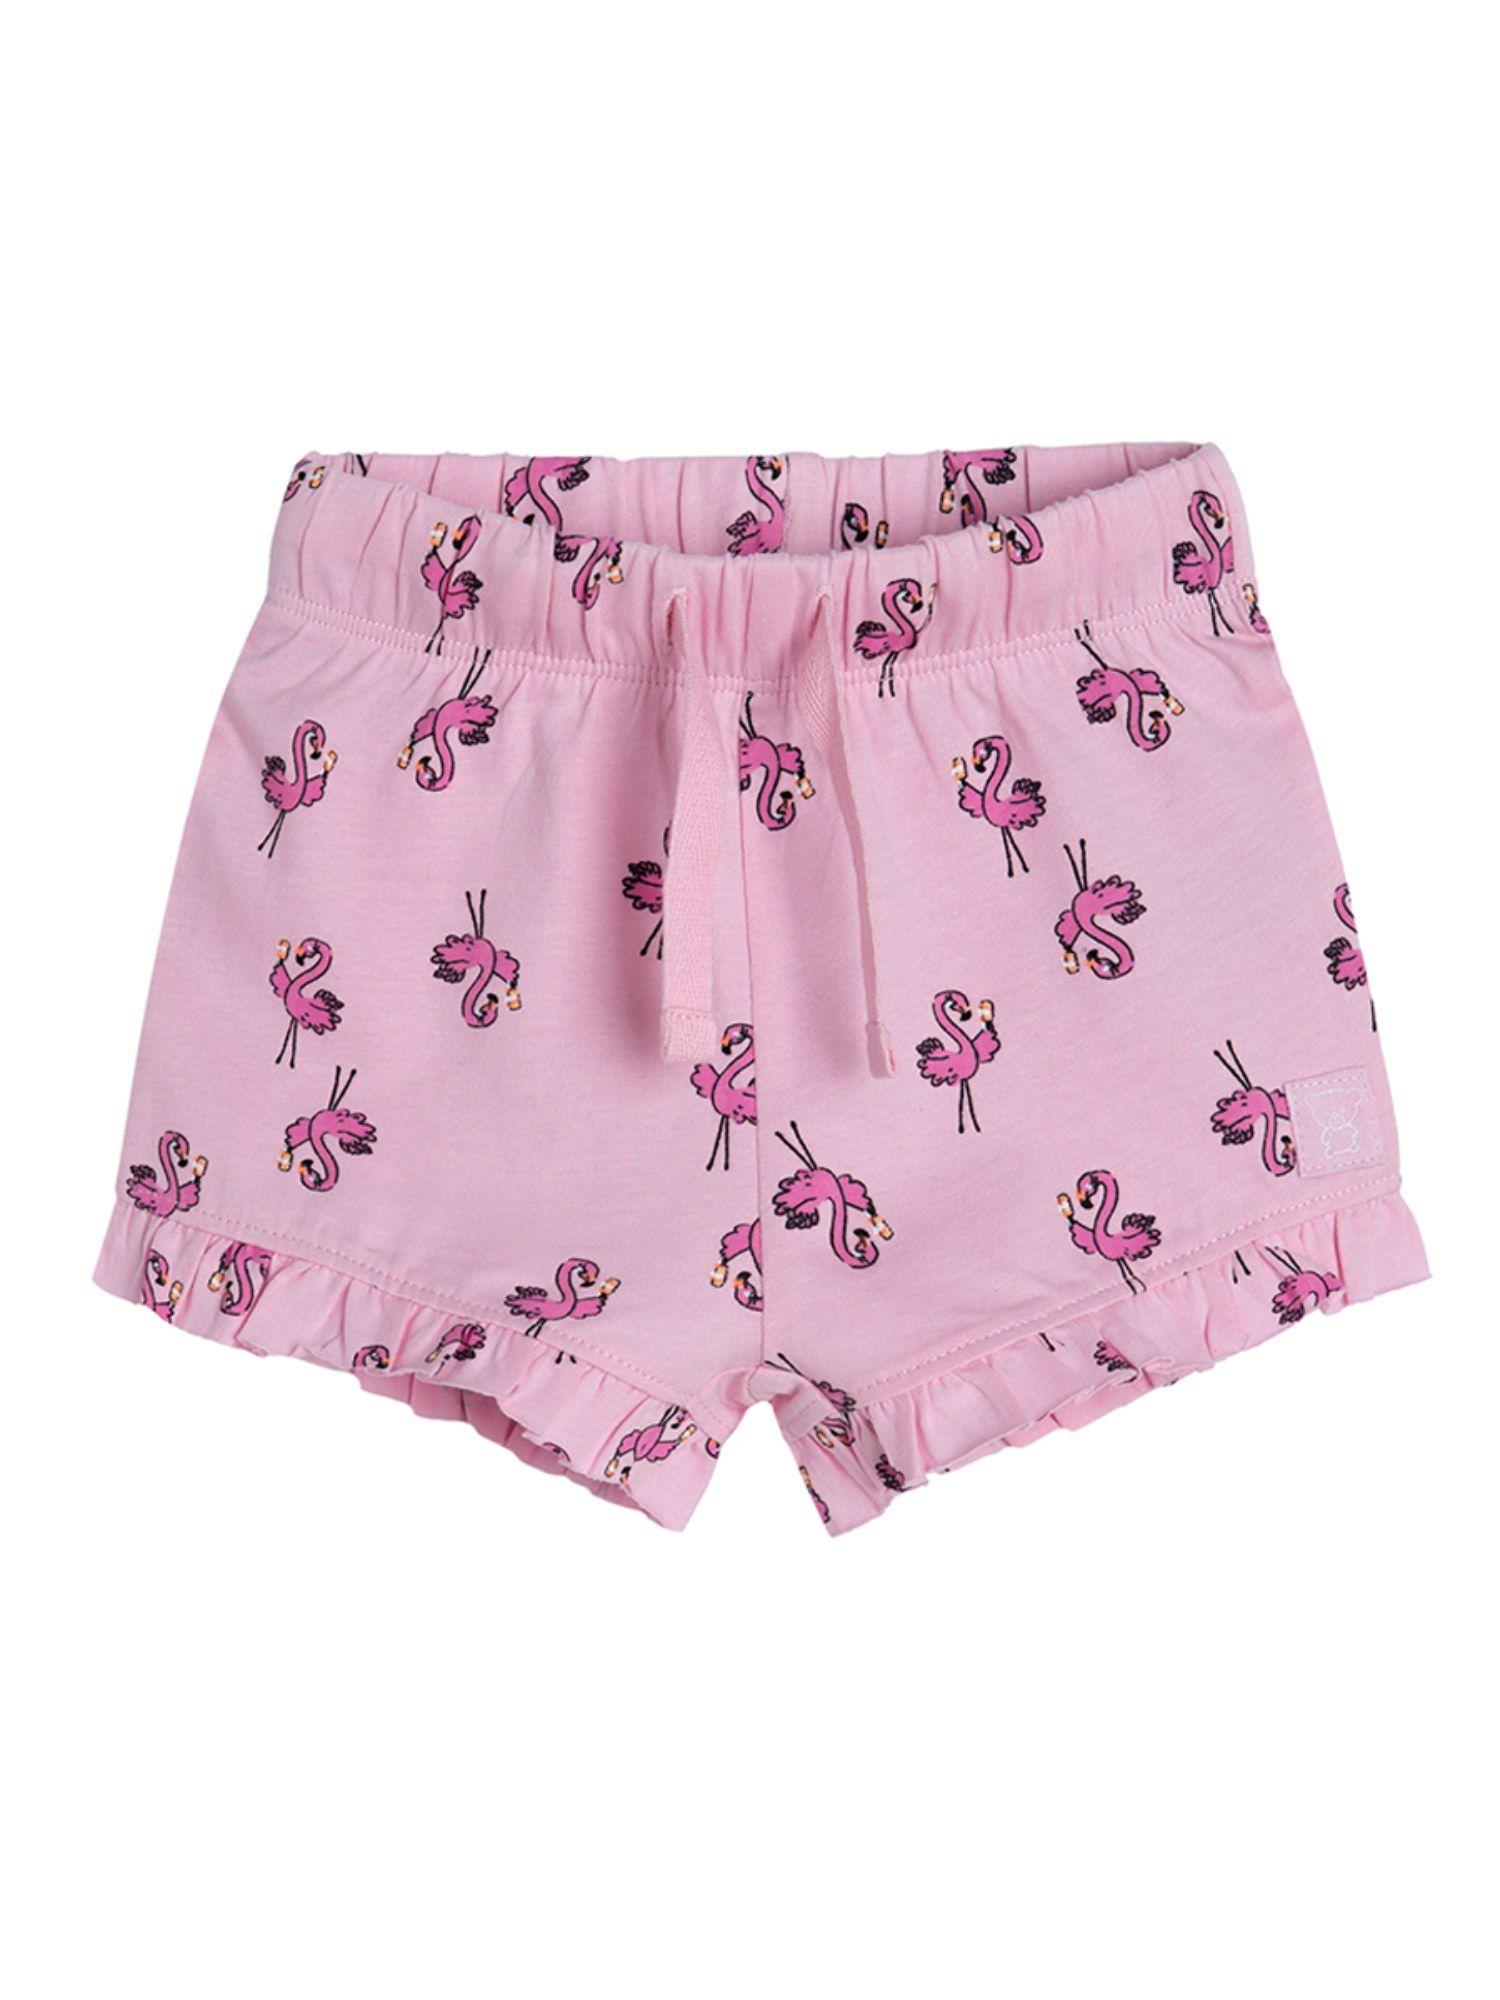 smyk girls pink printed shorts